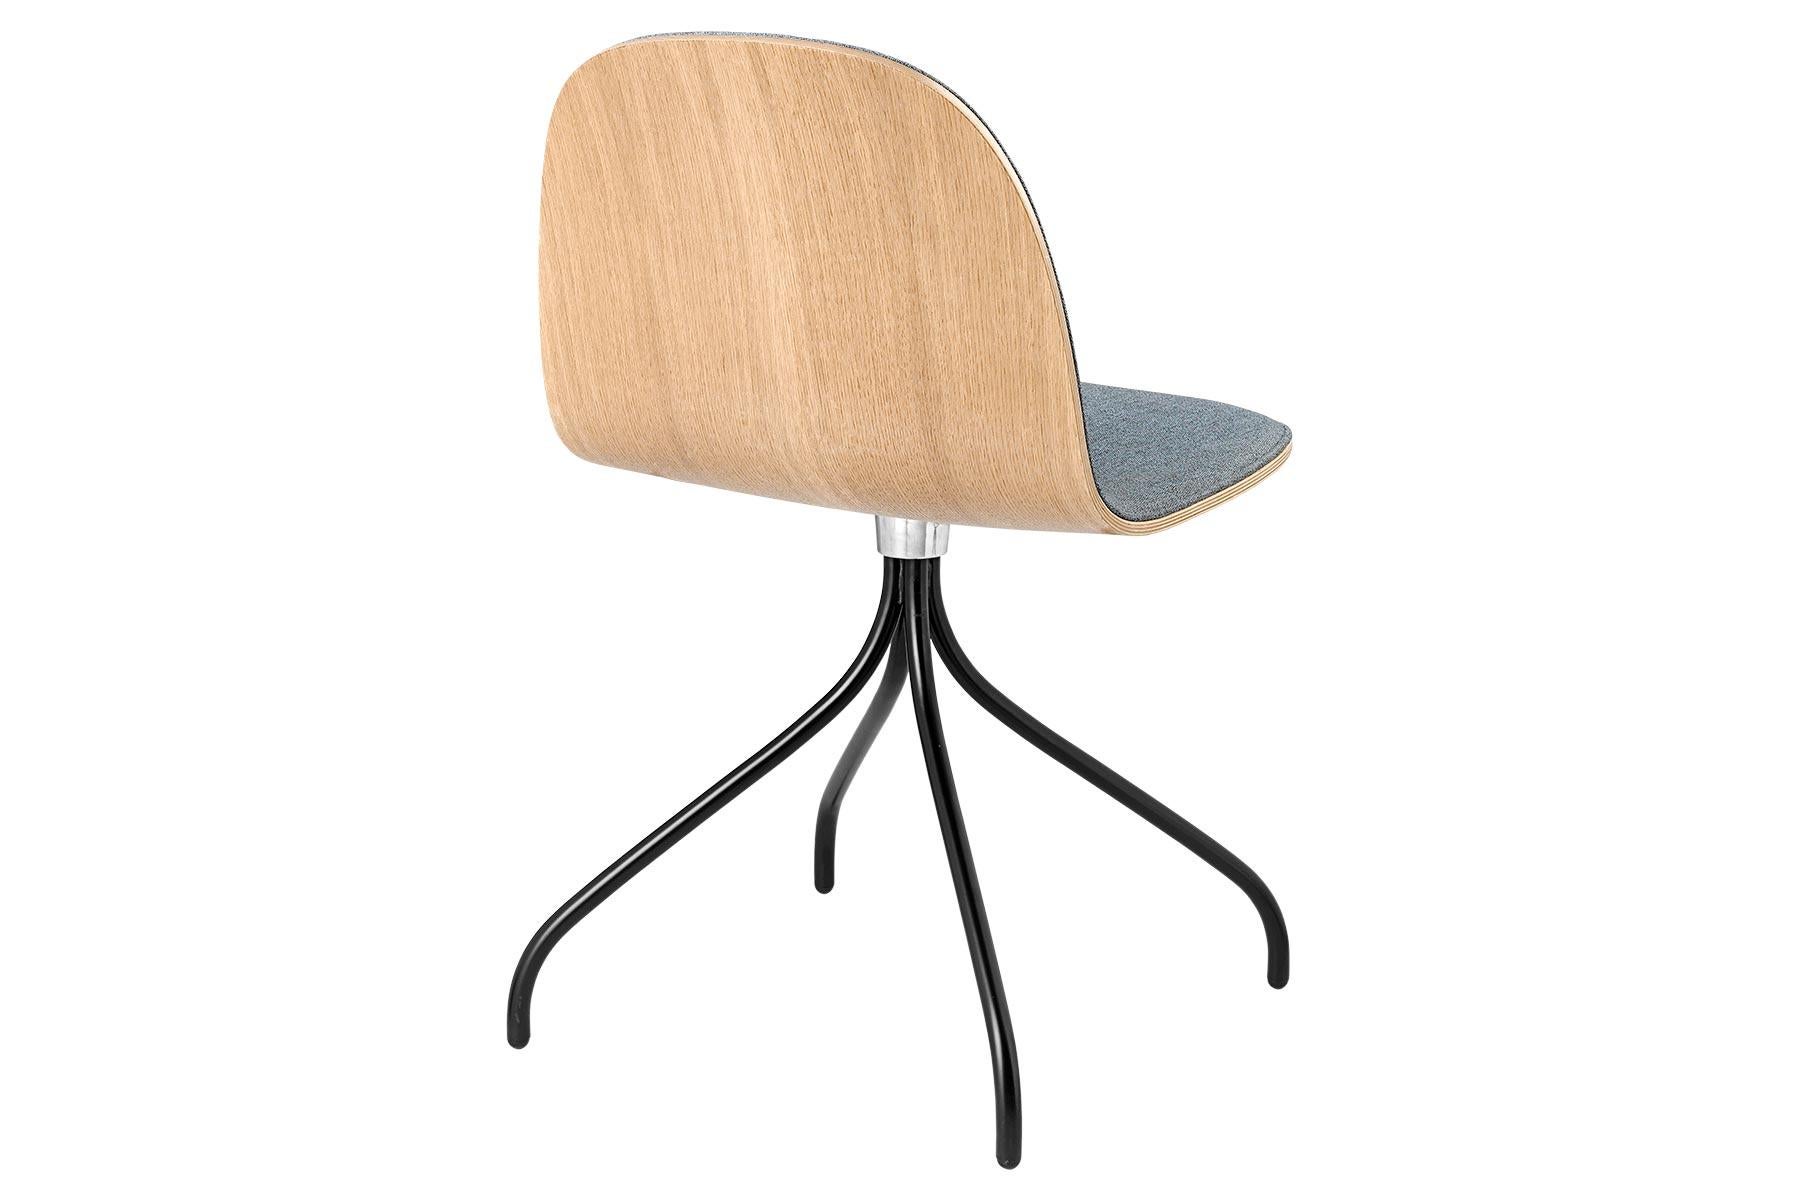 La chaise Gubi 2D est une série de chaises de salle à manger légères fabriquées en placage stratifié avec des options de revêtement frontal dans une large gamme de tissus et de cuirs, convenant à la fois aux espaces privés et publics. Dans le